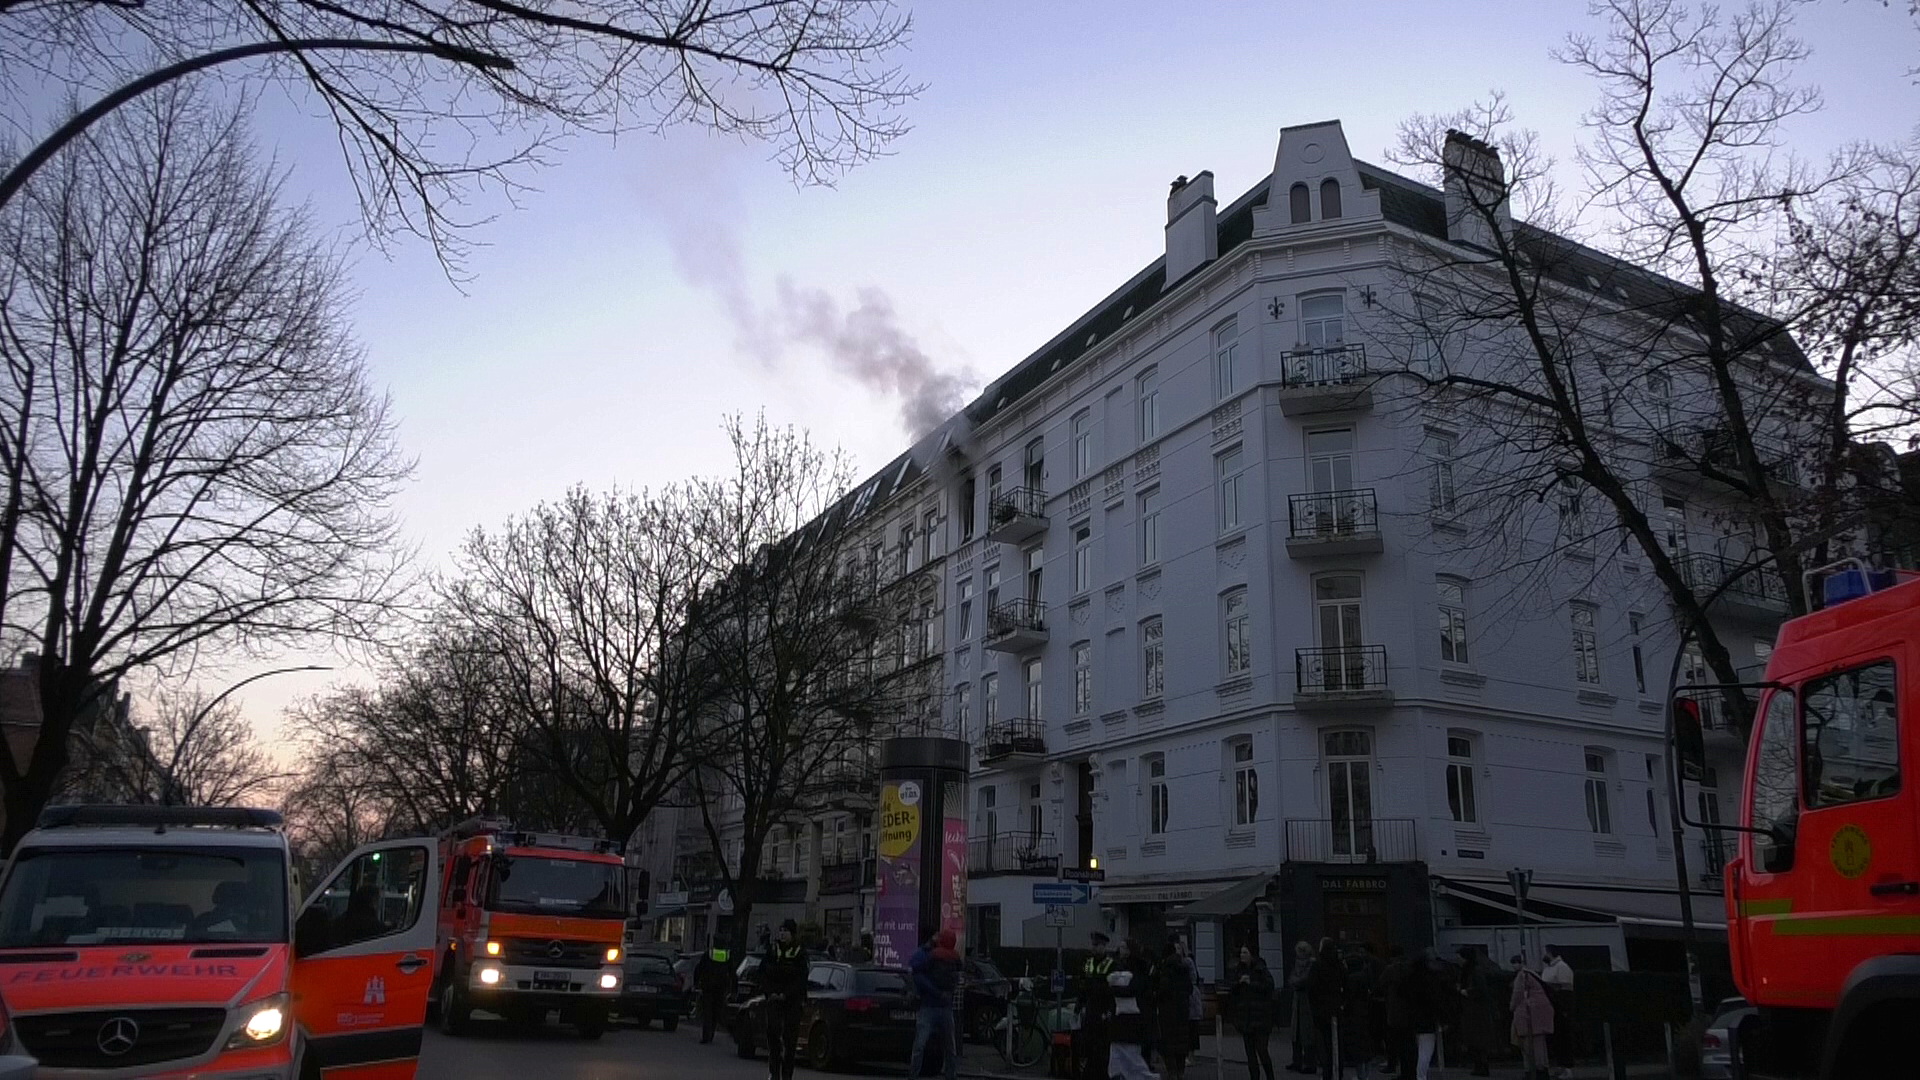 Rauch zieht aus der betroffenen Wohnung, in der ein Feuer ausgebrochen ist.